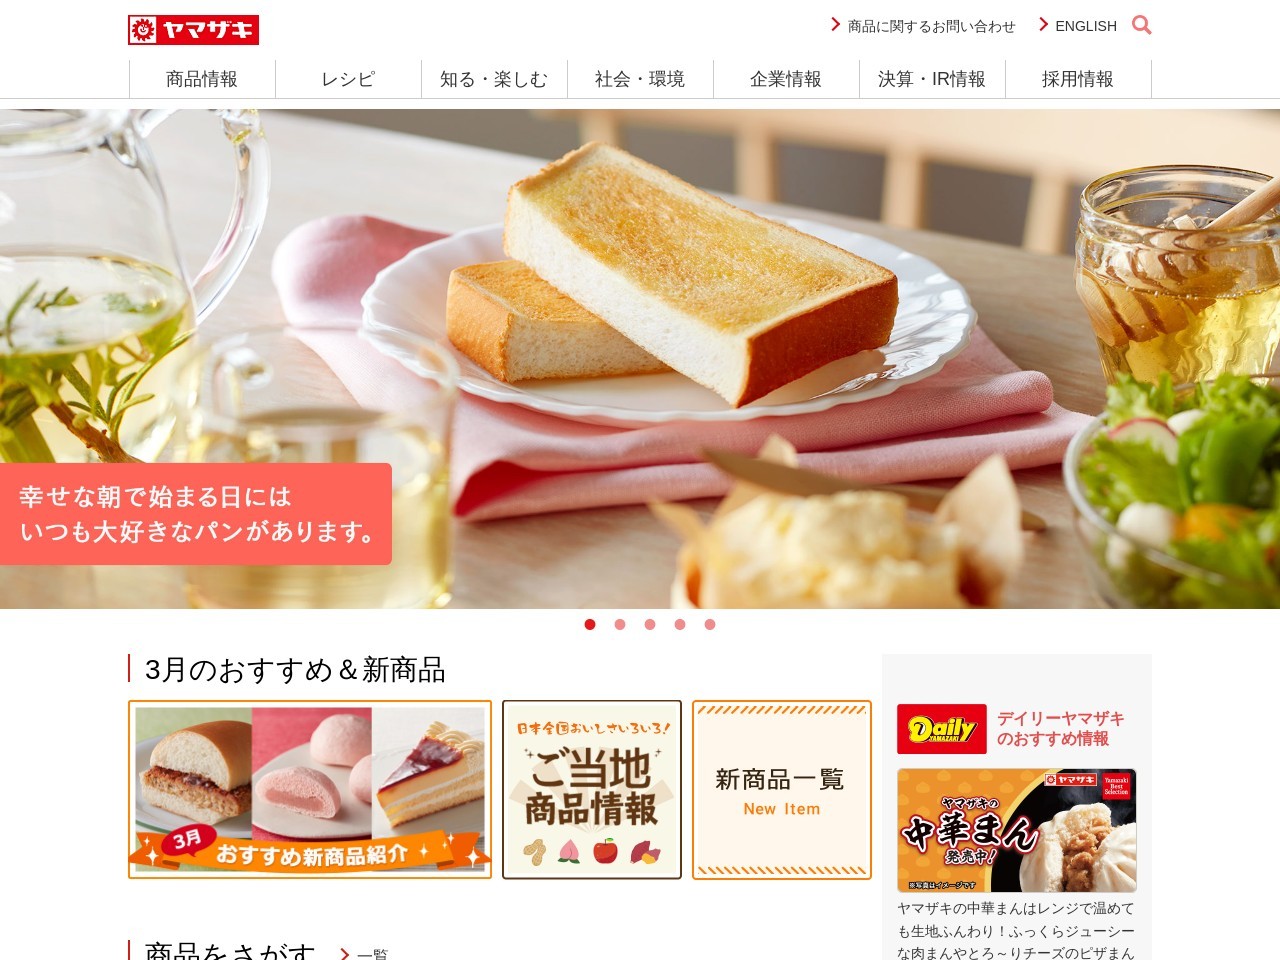 菅食料品店のクチコミ・評判とホームページ